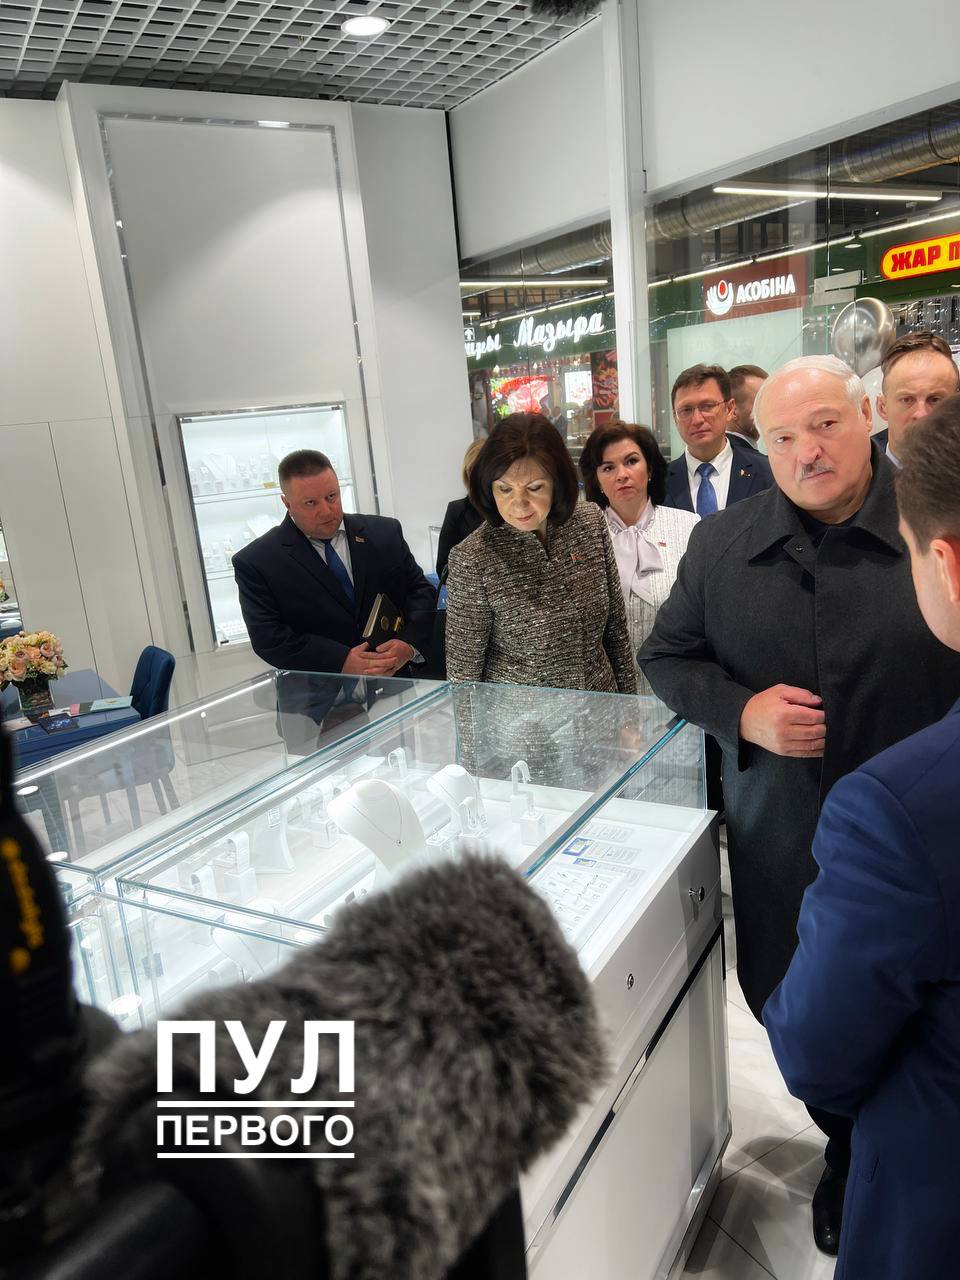 Лукашенко предложил строить в РФ беларусские ТЦ, чтобы не отдавать товары "жуликам"